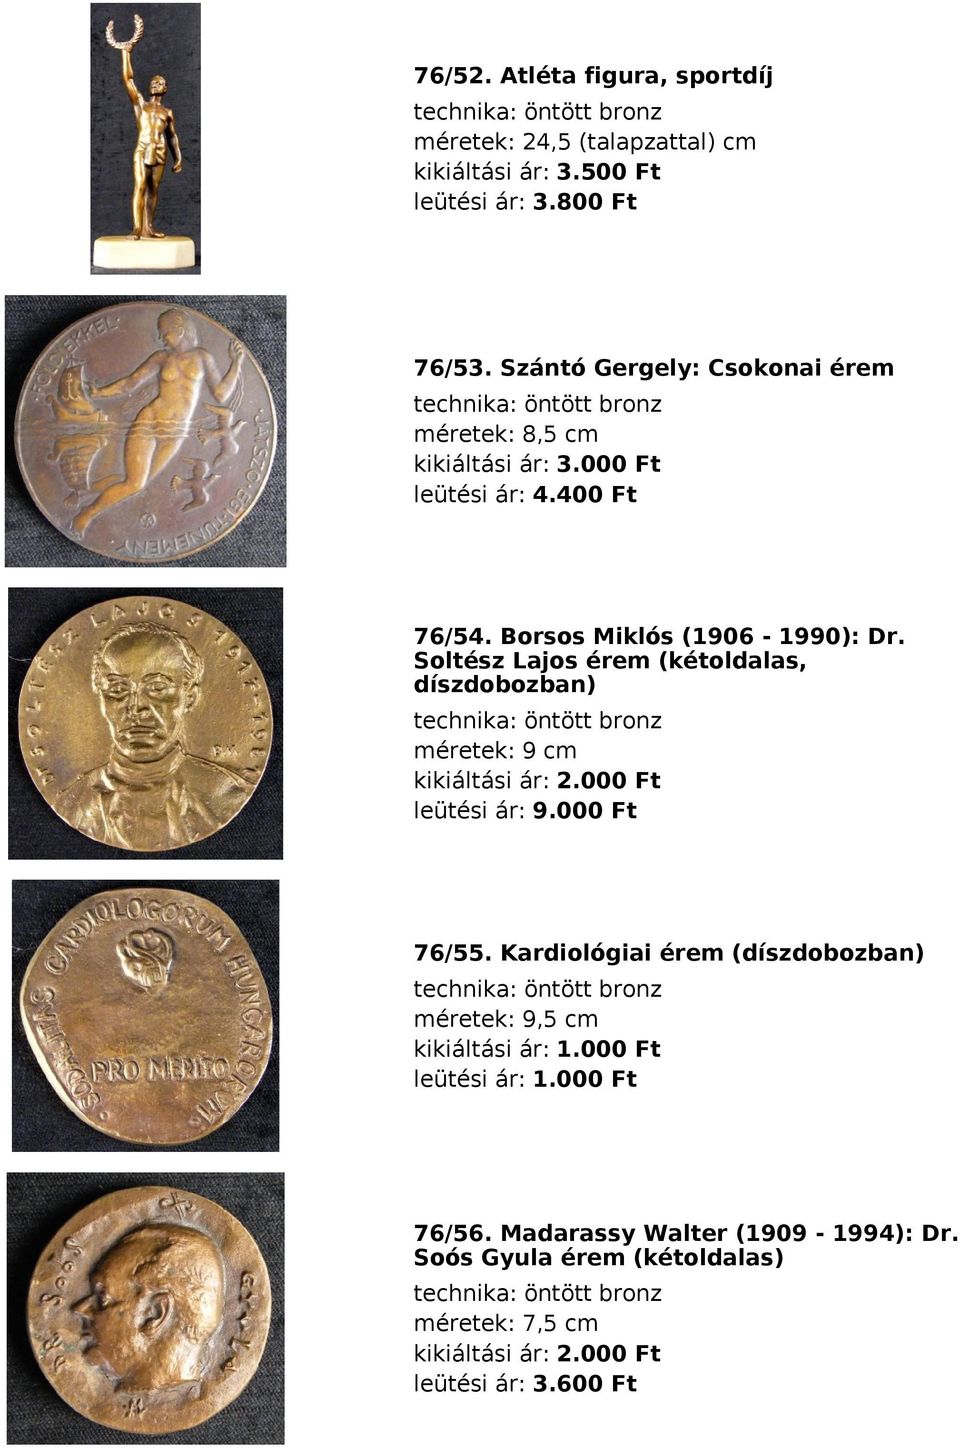 Soltész Lajos érem (kétoldalas, díszdobozban) technika: öntött bronz méretek: 9 cm kikiáltási ár: 2.000 Ft leütési ár: 9.000 Ft 76/55.